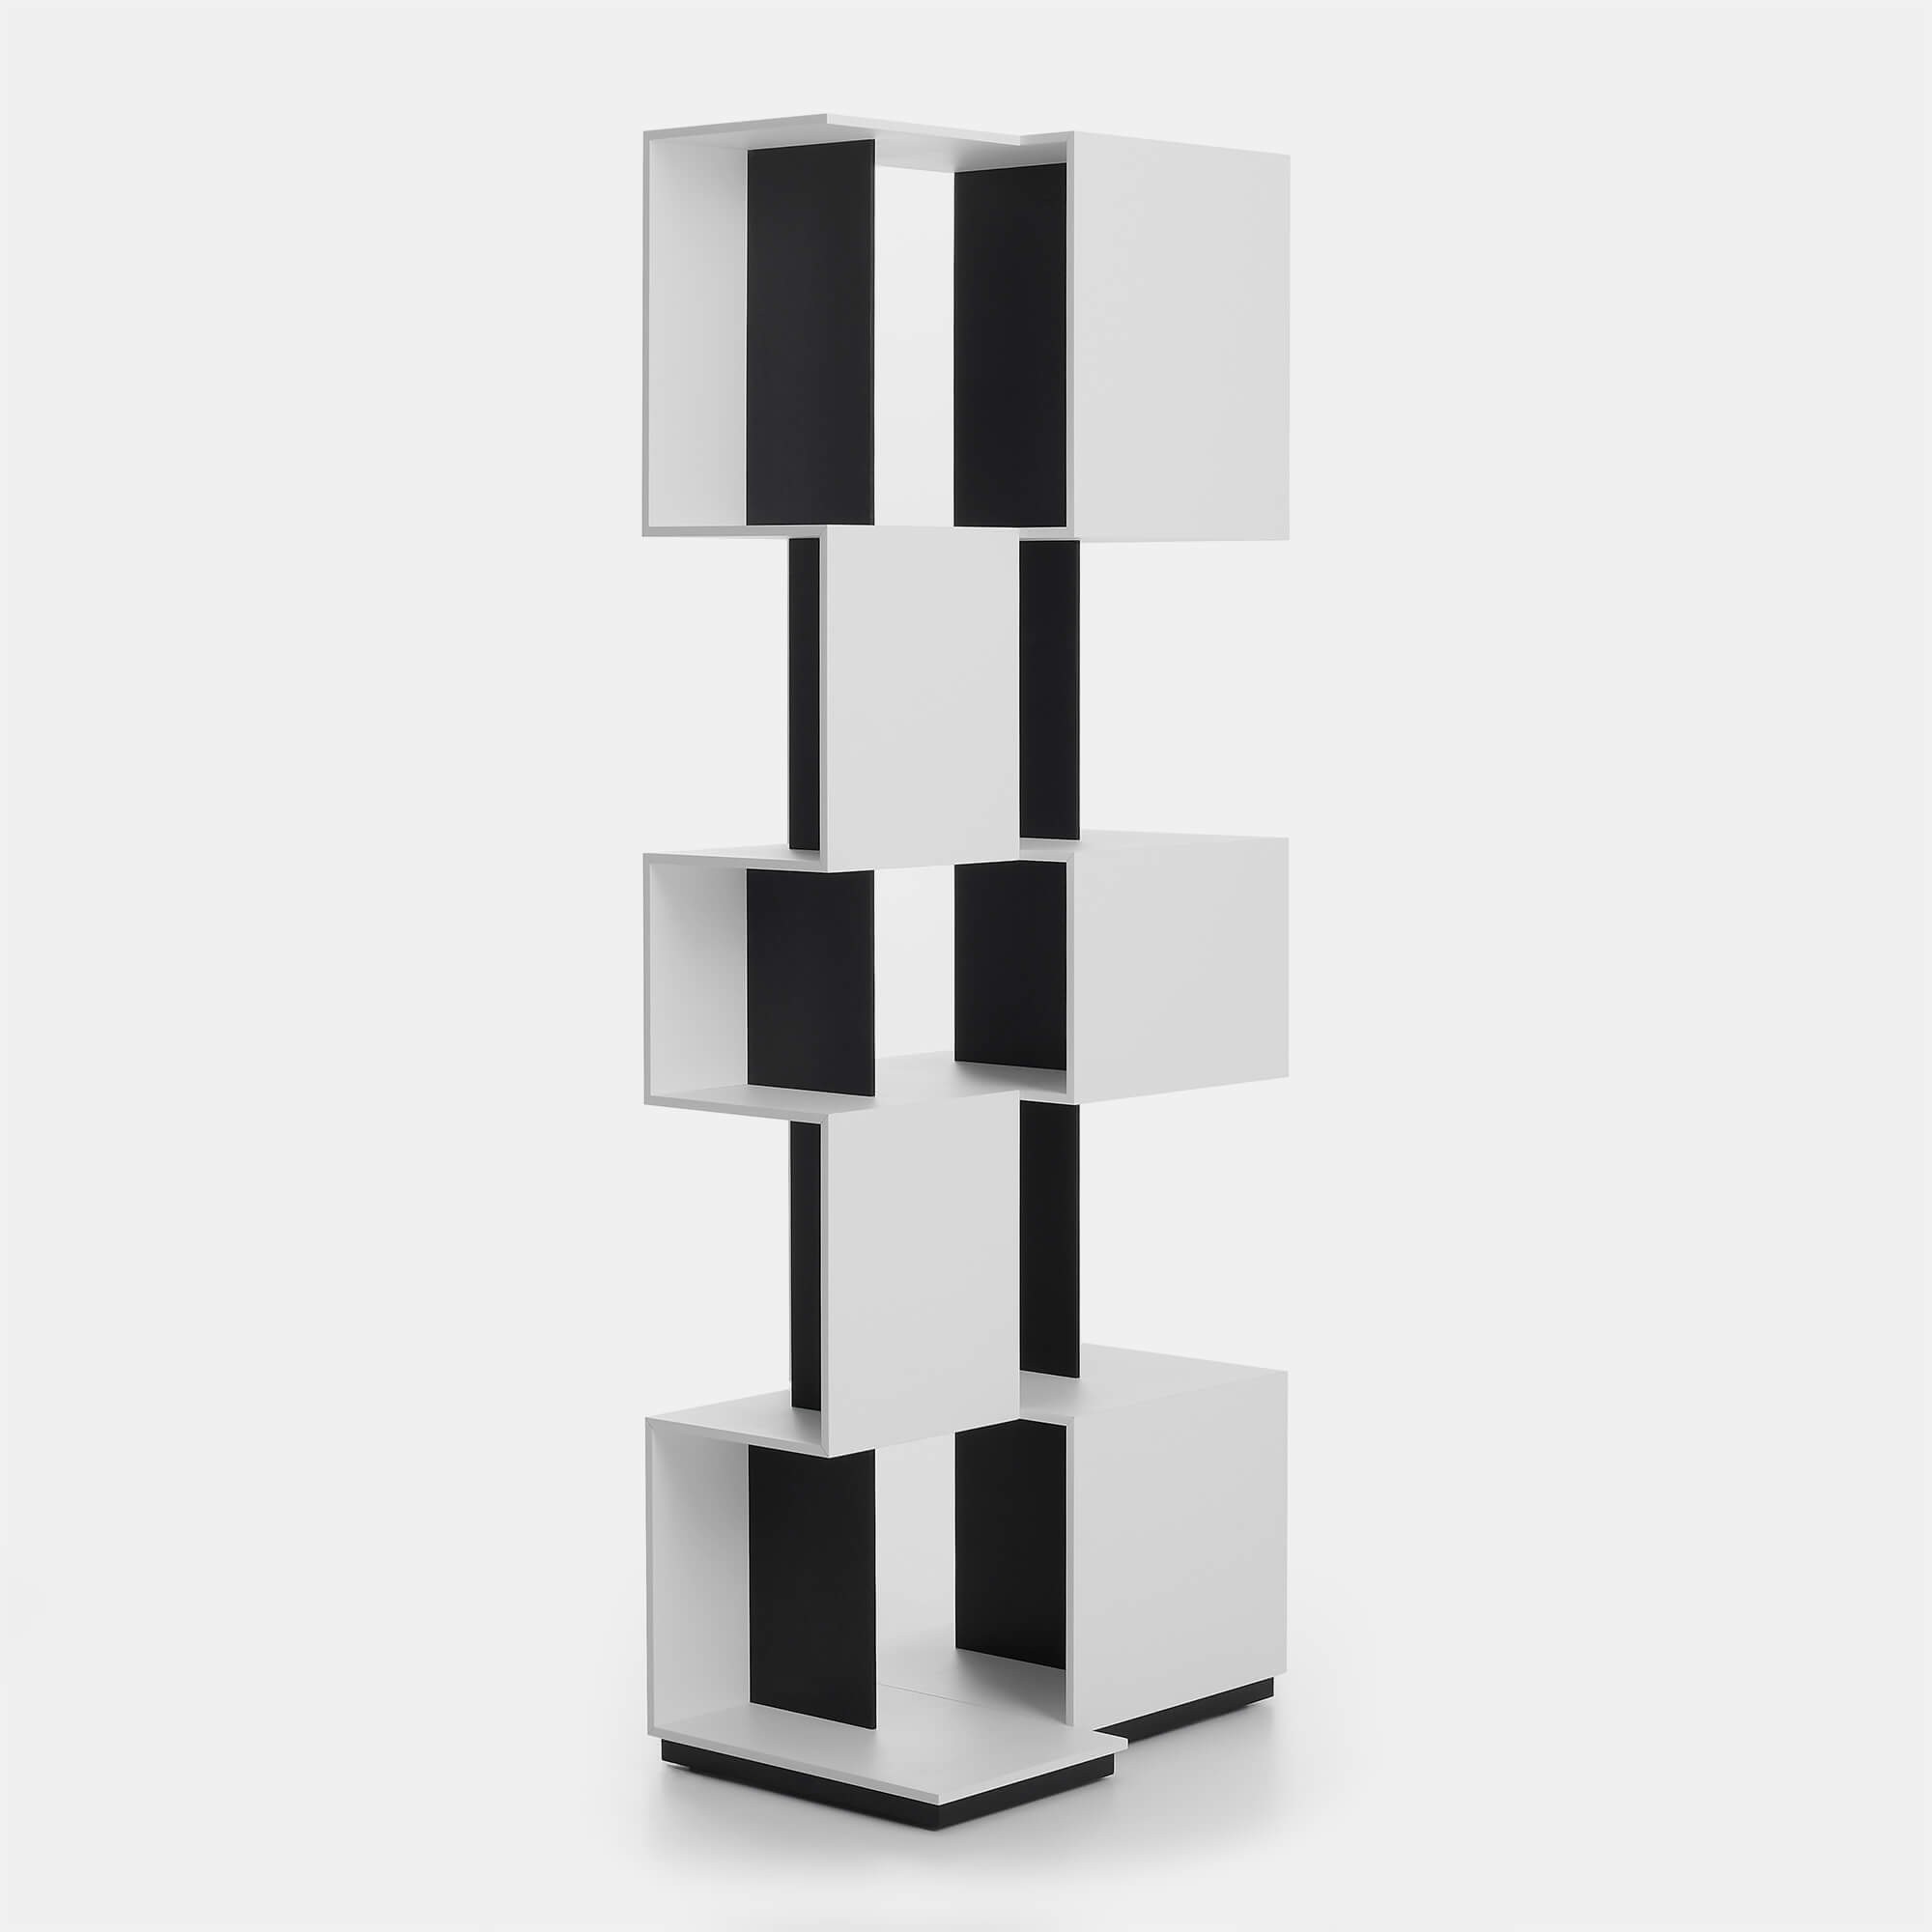 Qubit Design Free Standing Bookcase Mdf Italia